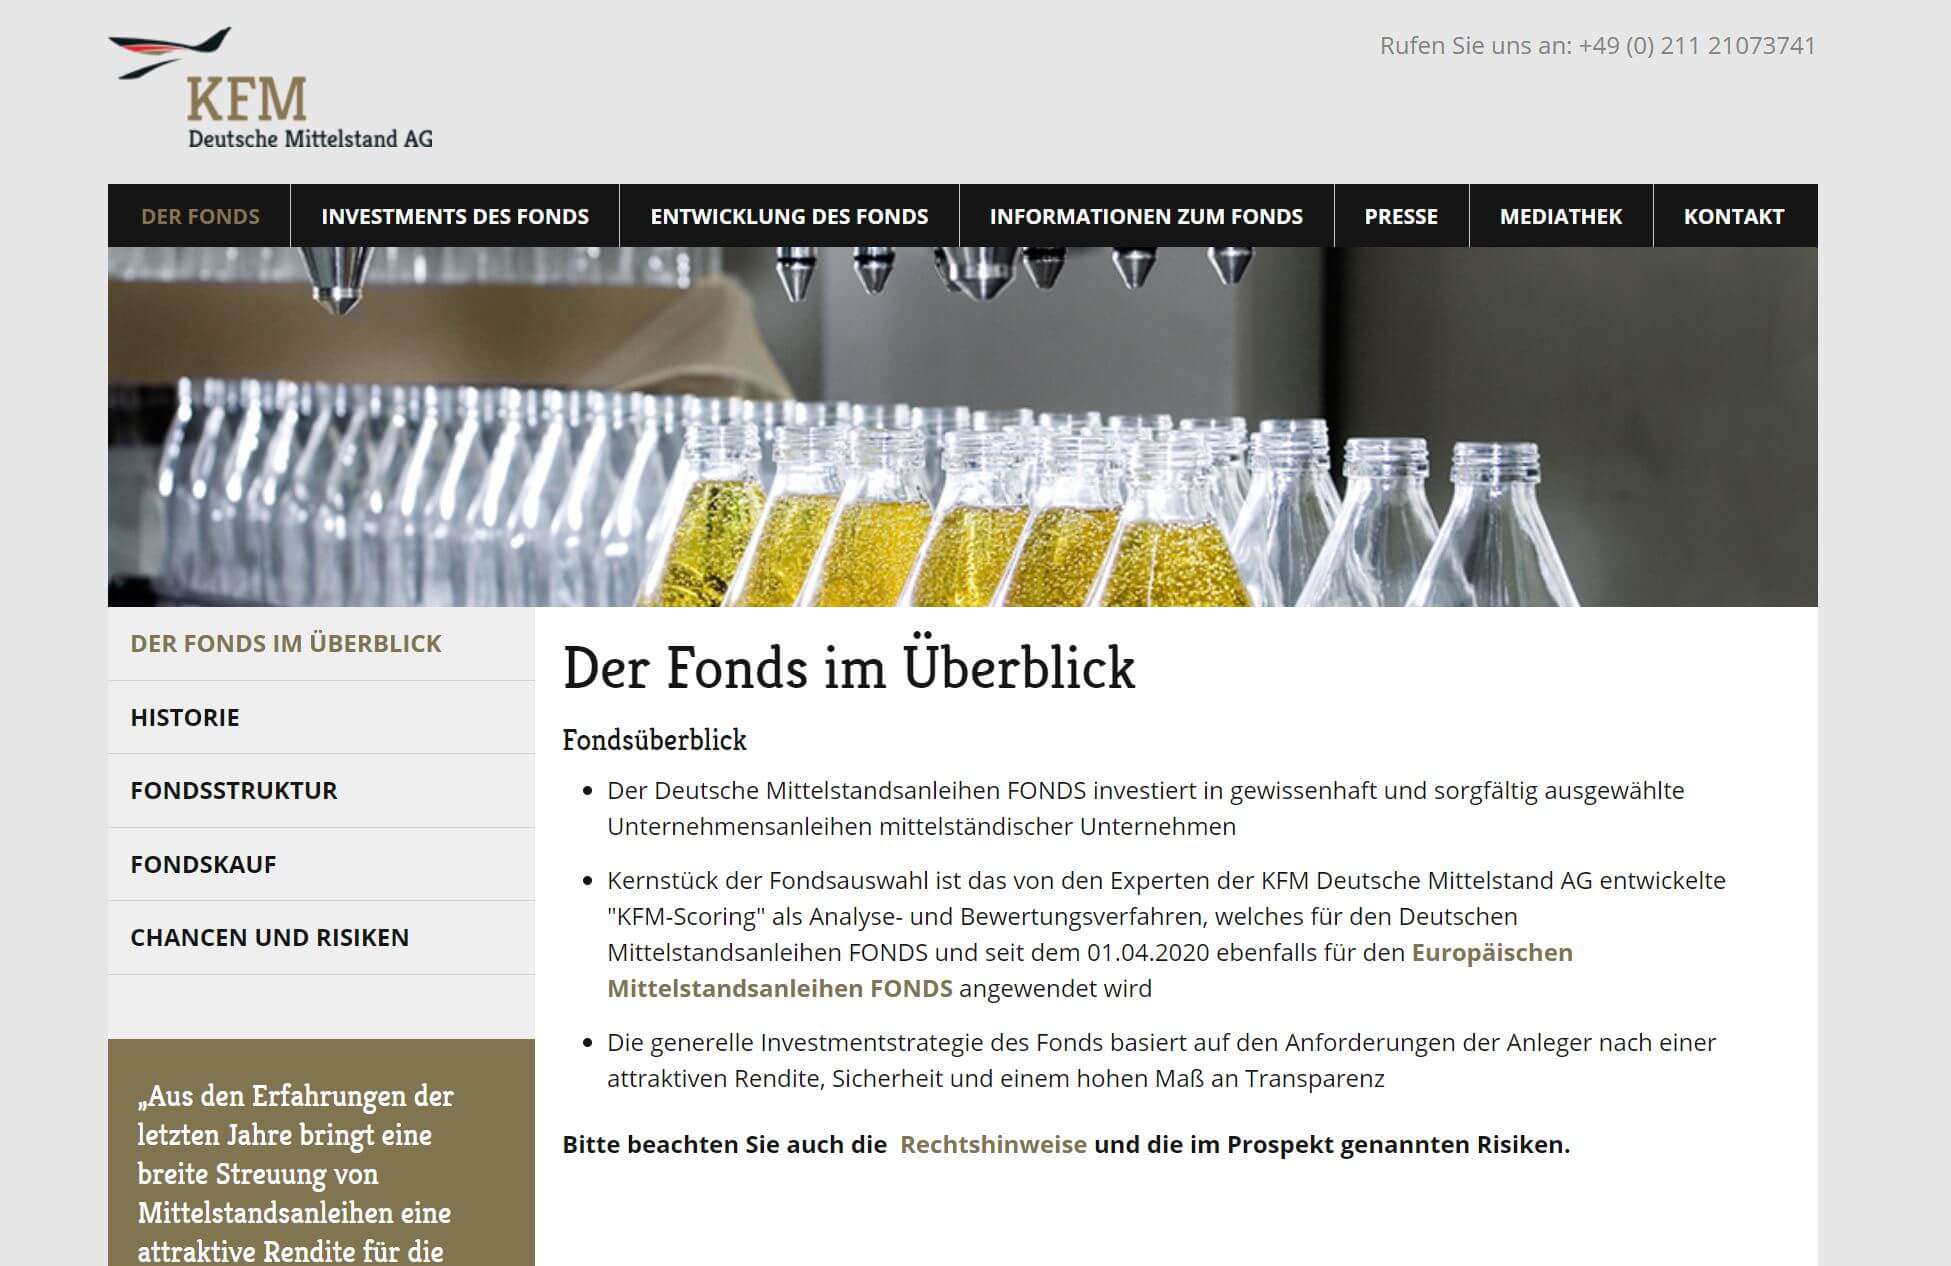 Deutsche Mittelstandsanleihen Fonds